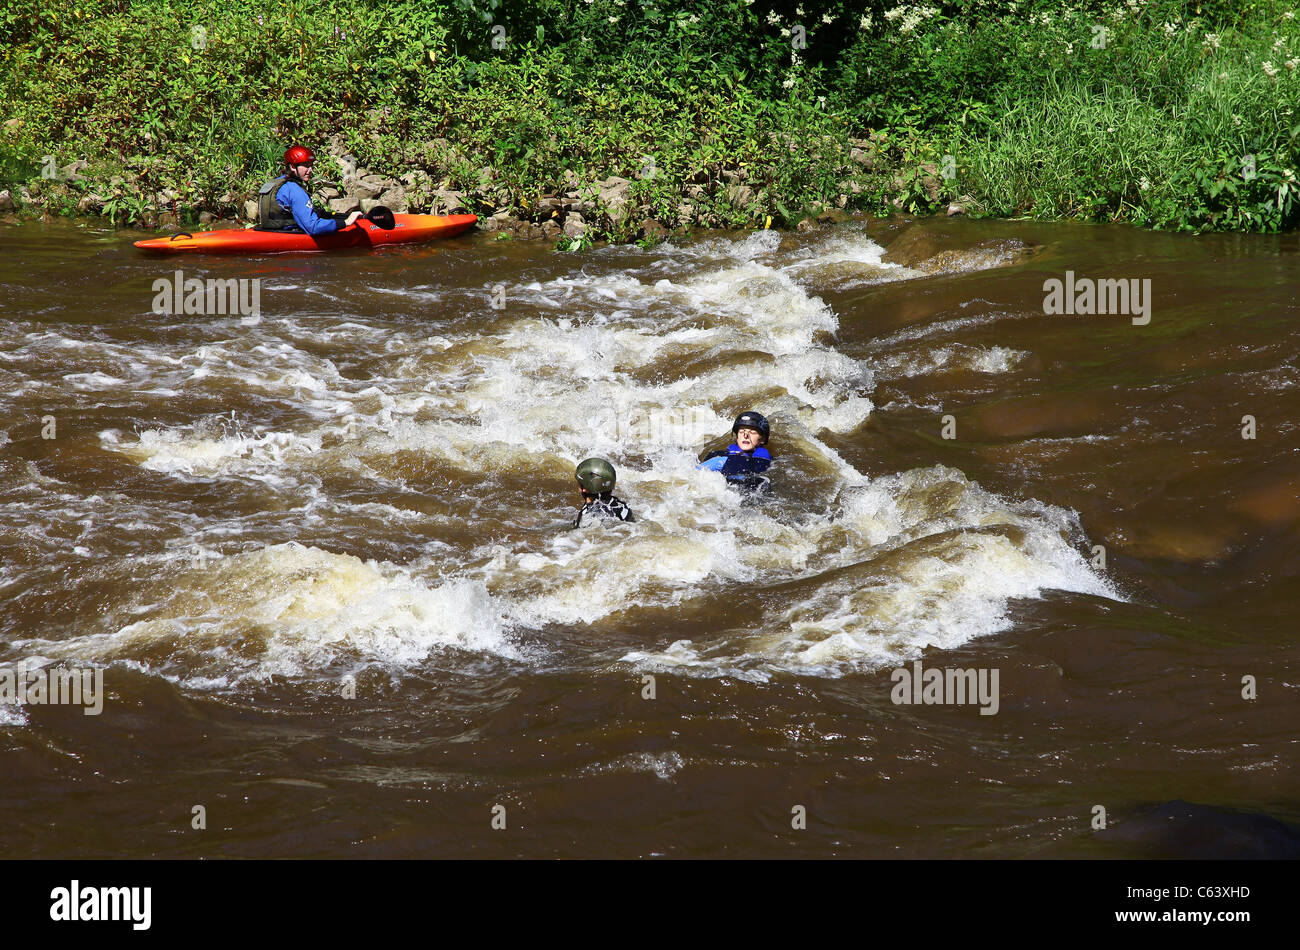 Extreme gli appassionati di sport Shooting the Rapids nel fiume Wye, Symonds Yat, Herefordshire, England, Regno Unito Foto Stock